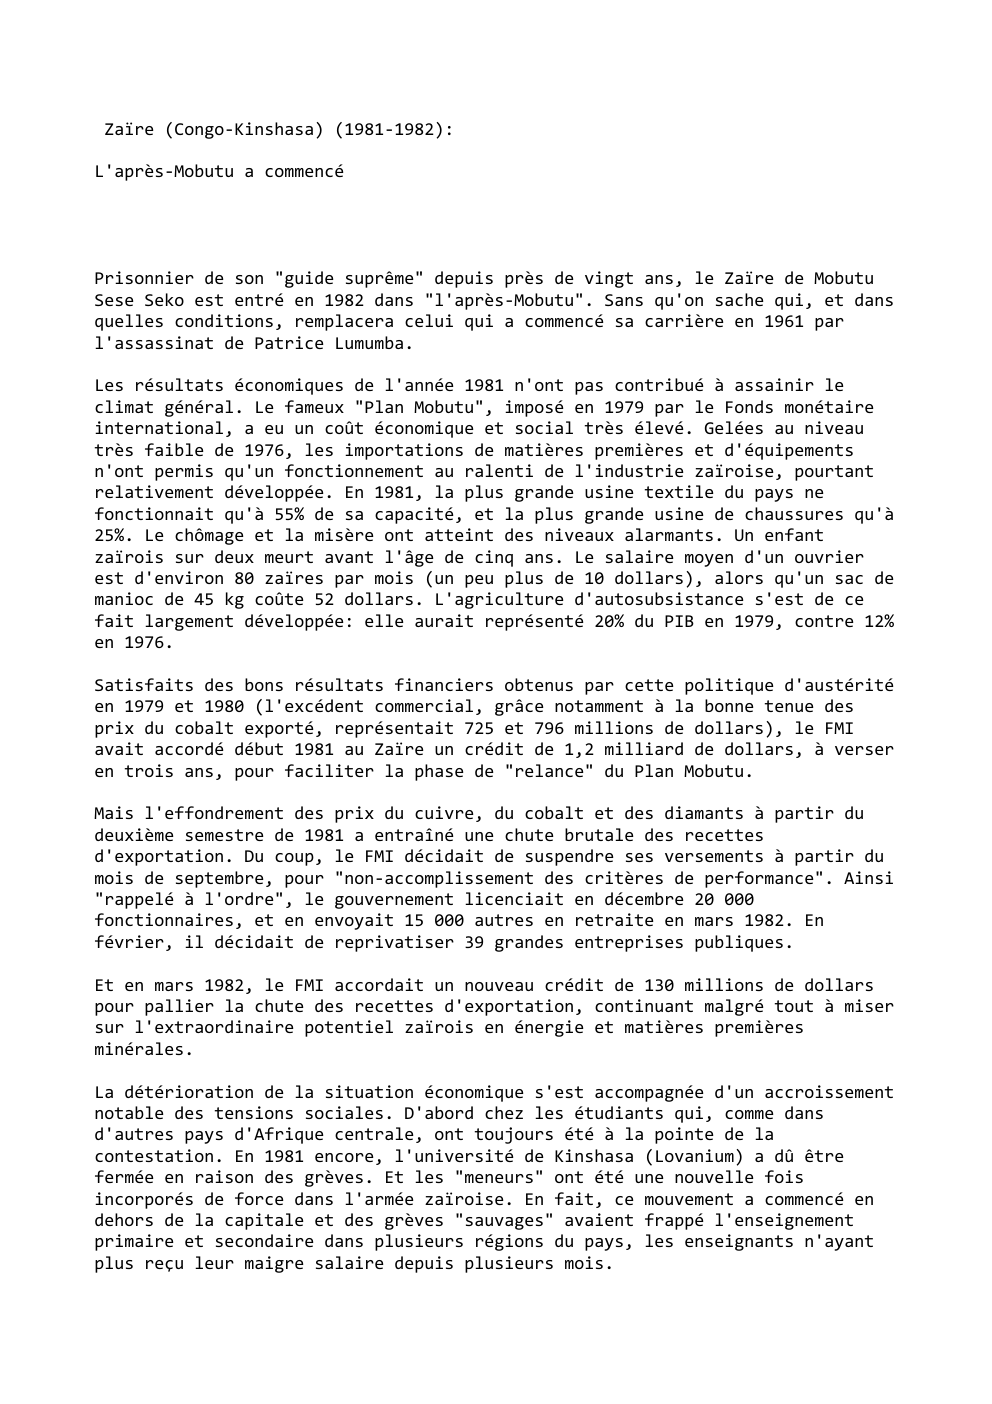 Prévisualisation du document Zaïre (Congo-Kinshasa) (1981-1982):
L'après-Mobutu a commencé

Prisonnier de son "guide suprême" depuis près de vingt ans, le Zaïre de Mobutu...